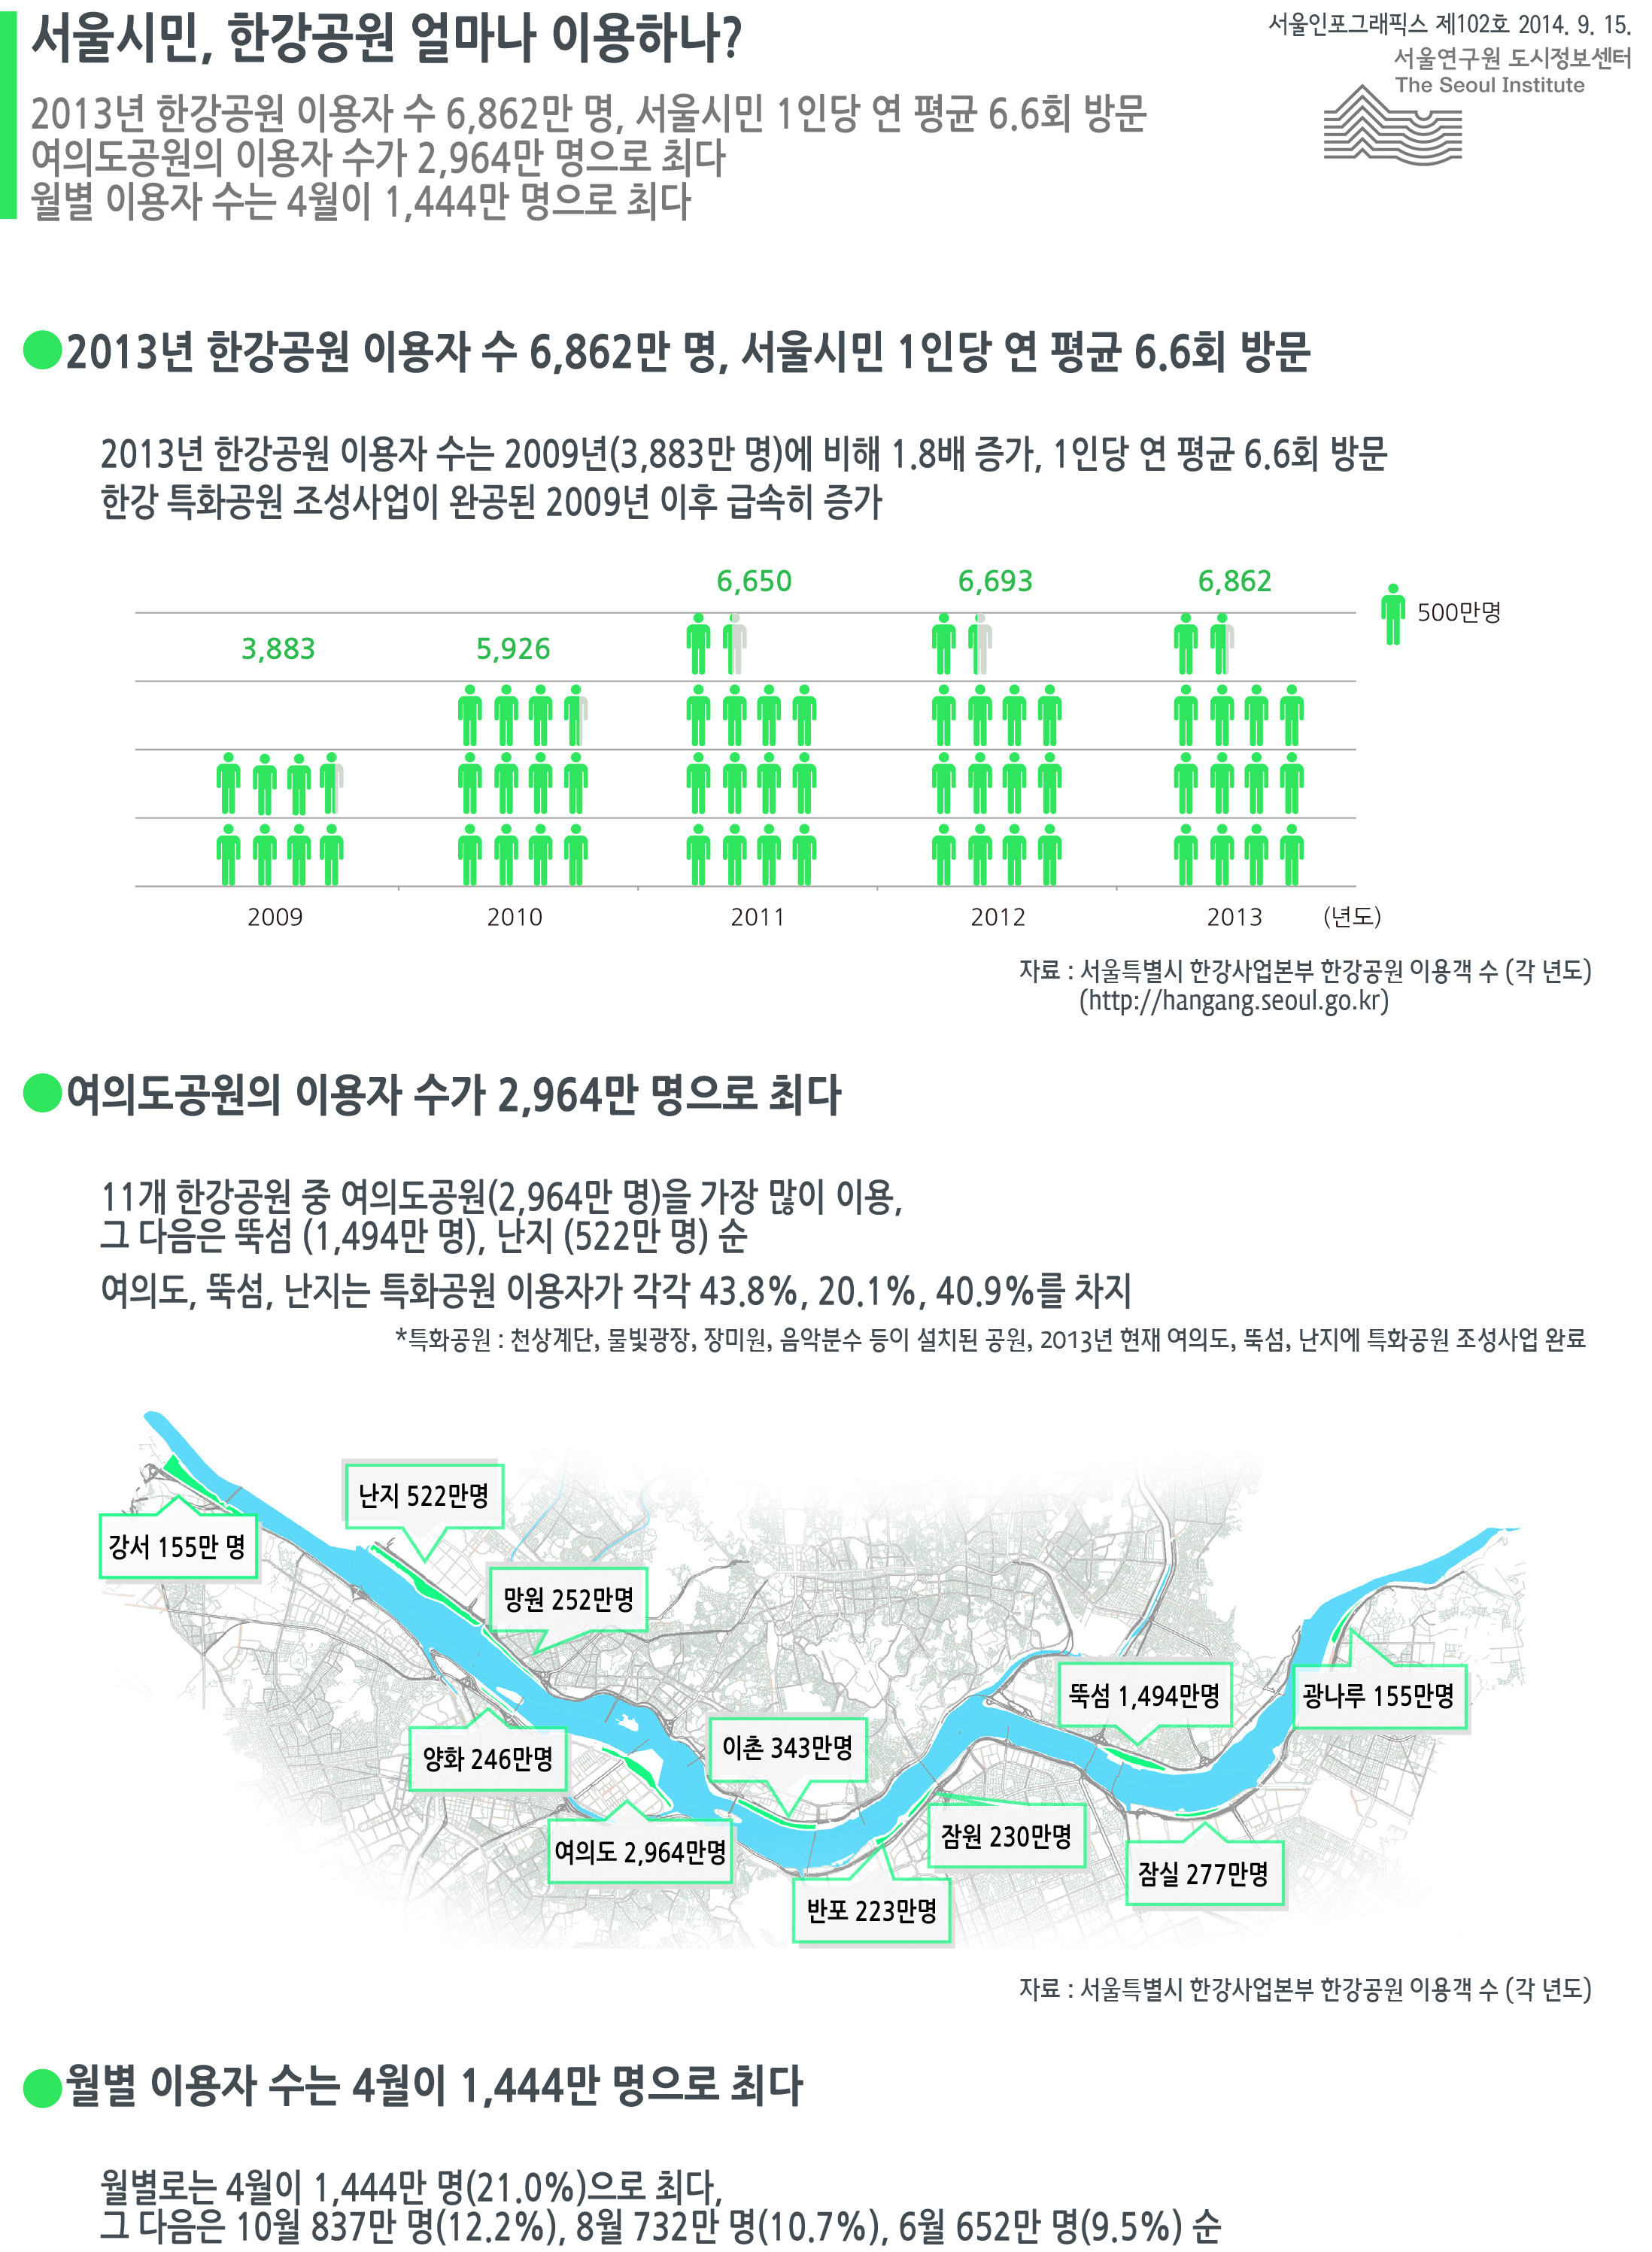 서울시민, 한강공원 얼마나 이용하나? 서울인포그래픽스 제102호 2014년 9월 15일 2013년 한강공원 이용자 수 6,862만 명, 서울시민 1인당 연 평균 6.6회 방문. 여의도공원의 이용자 수가 2,964만 명으로 최다. 월별 이용자 수는 4월이 1,444만 명으로 최다로 정리될 수 있습니다. 인포그래픽으로 제공되는 그래픽은 하단에 표로 자세히 제공됩니다.